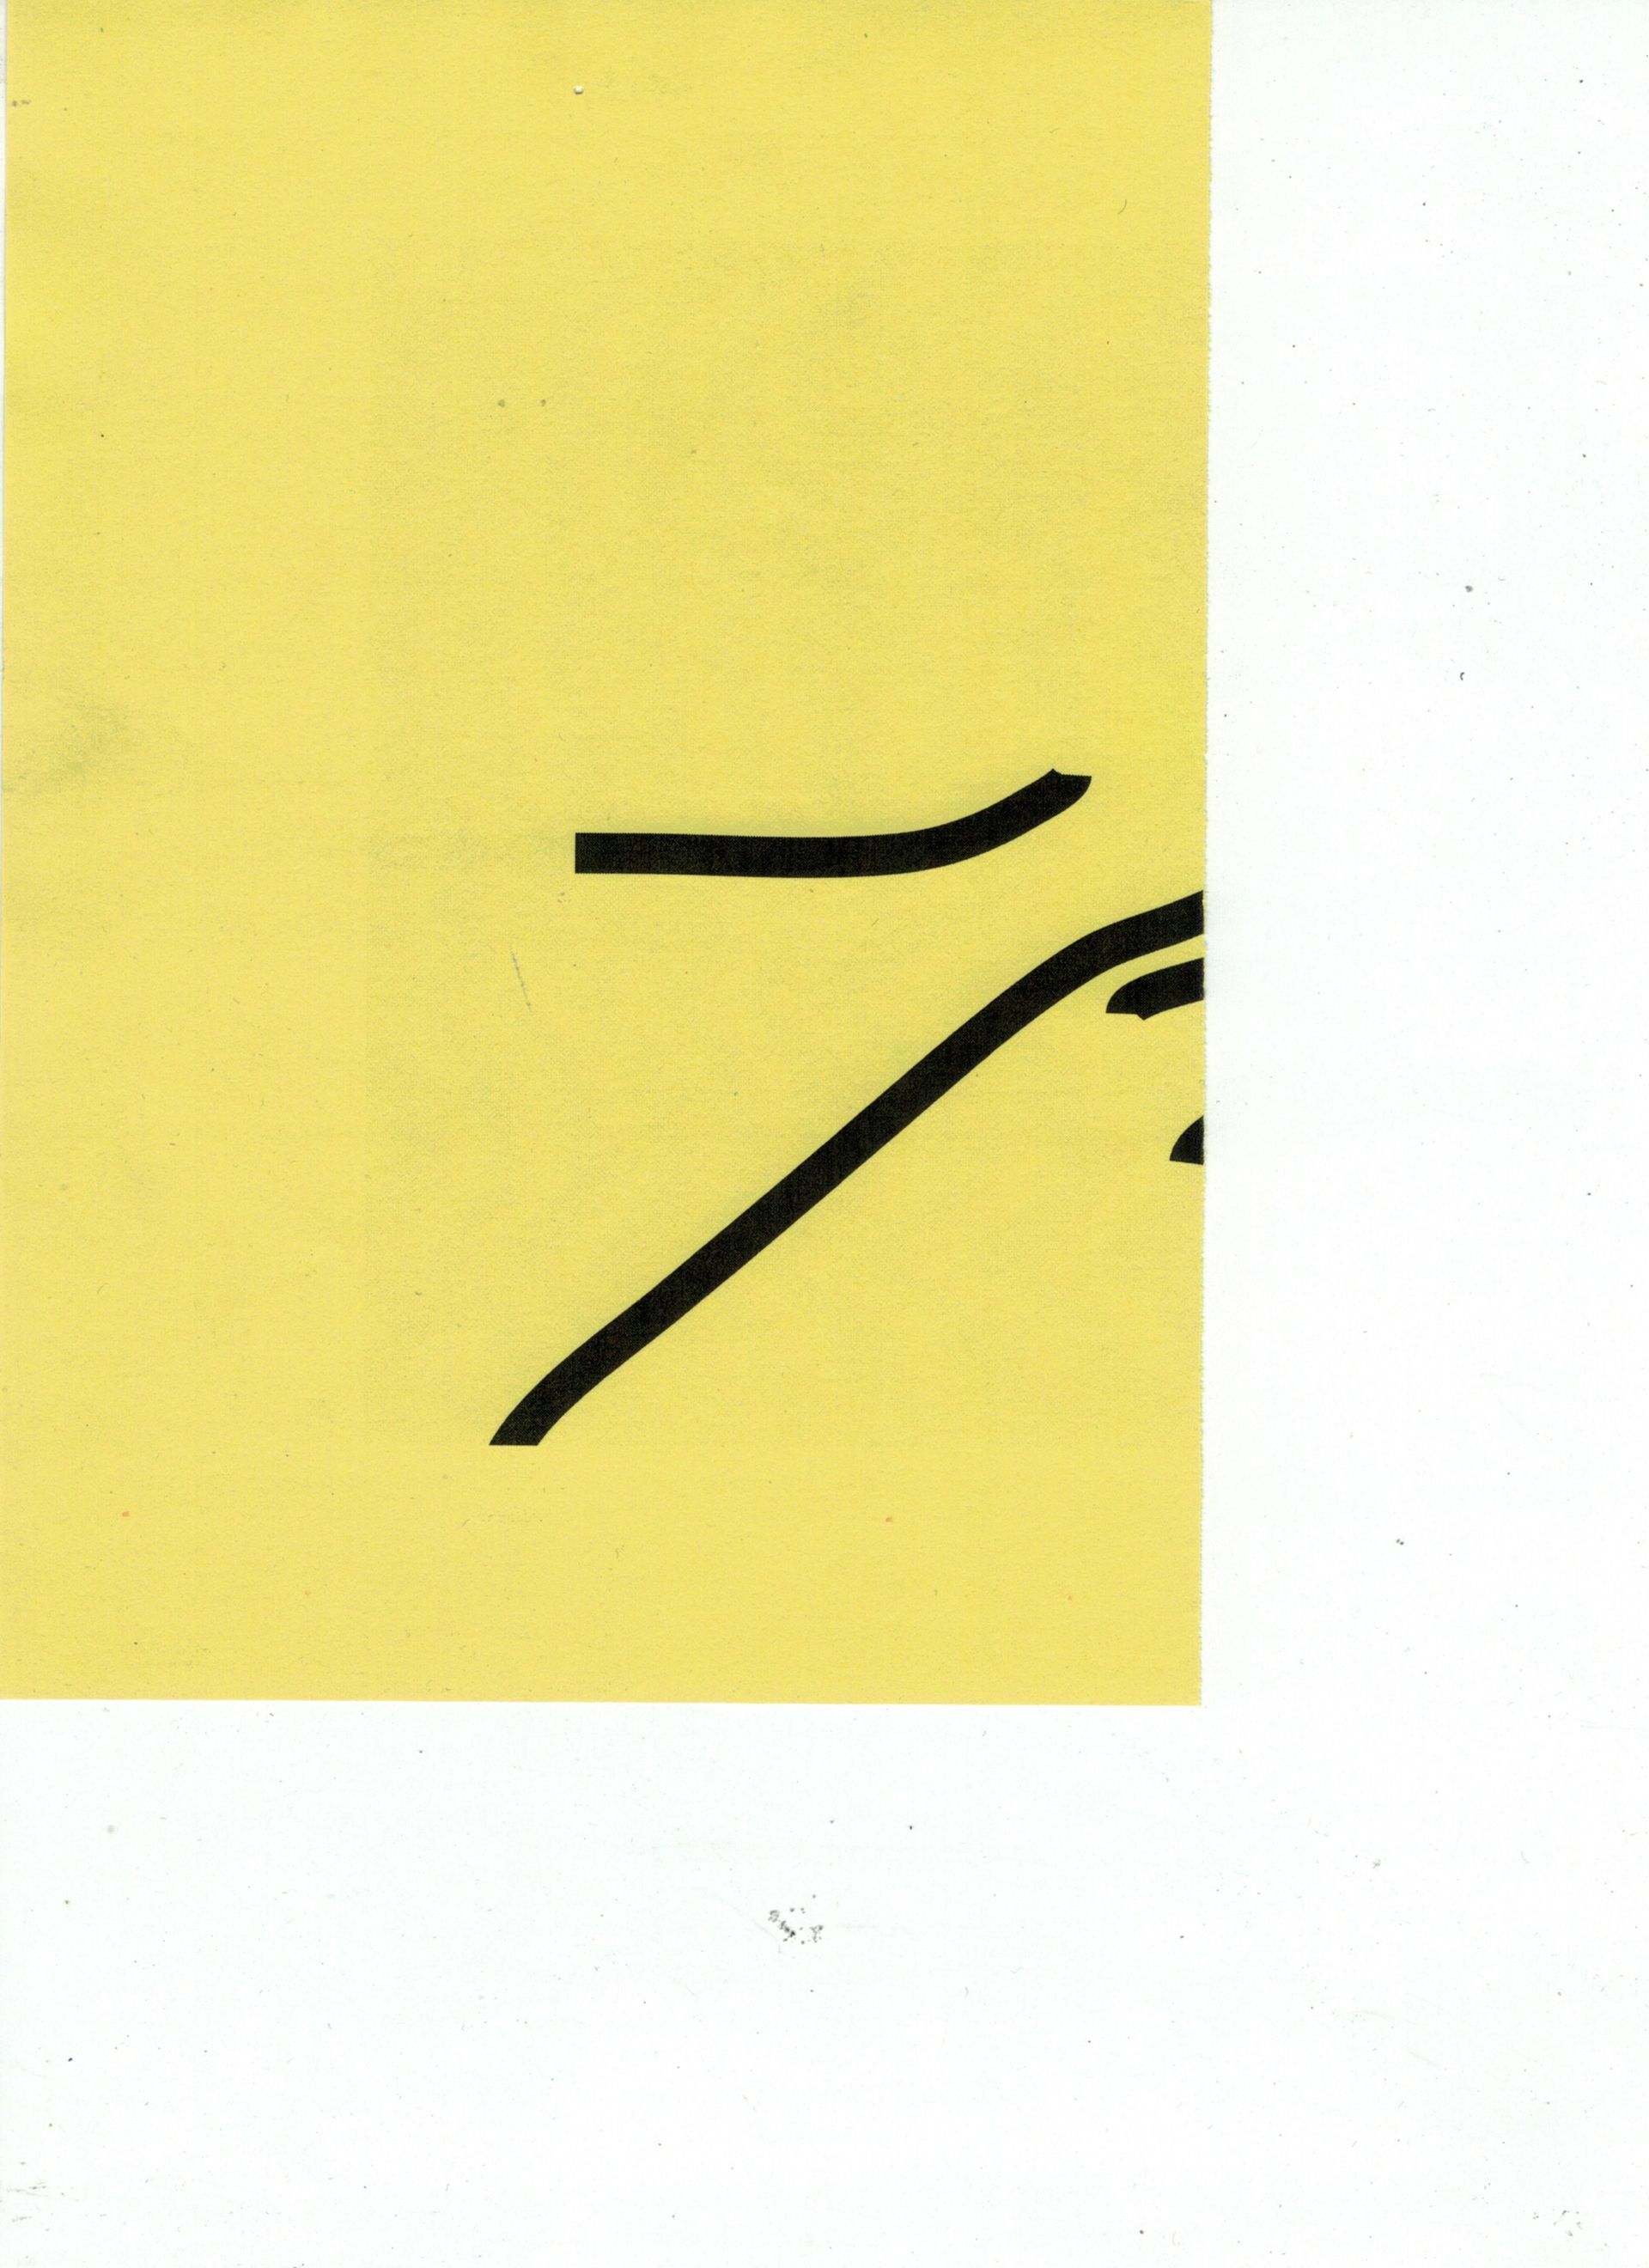 Malte Zenses, Scan von einem gelben Blattpapier, 2021, laser print on paper, 21 × 14.8 cm